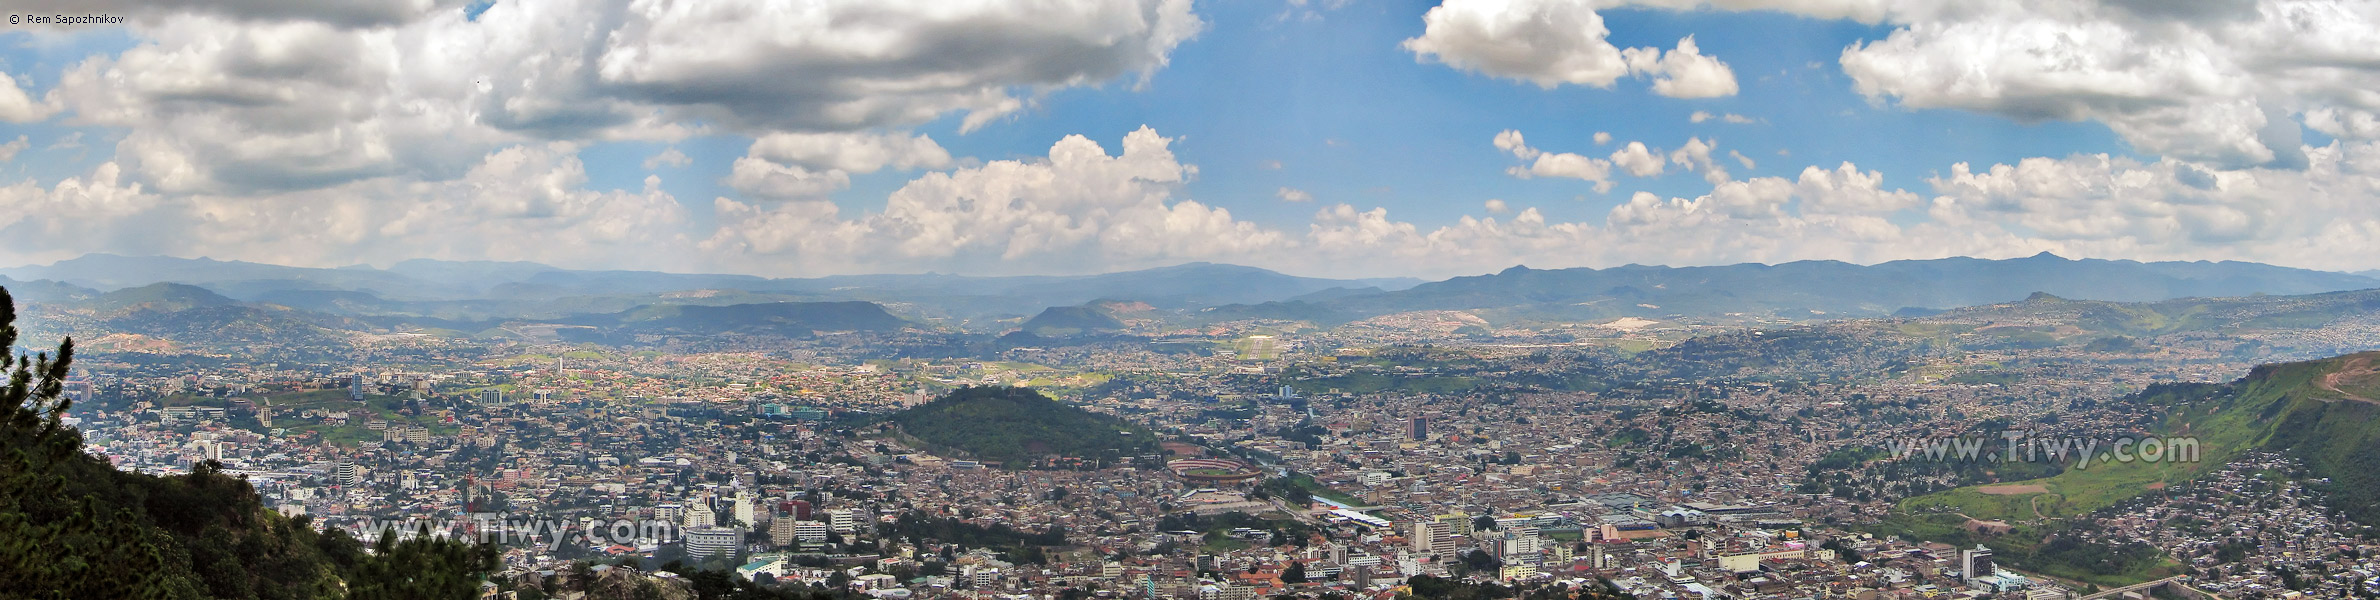 Panoramic view of Tegucigalpa